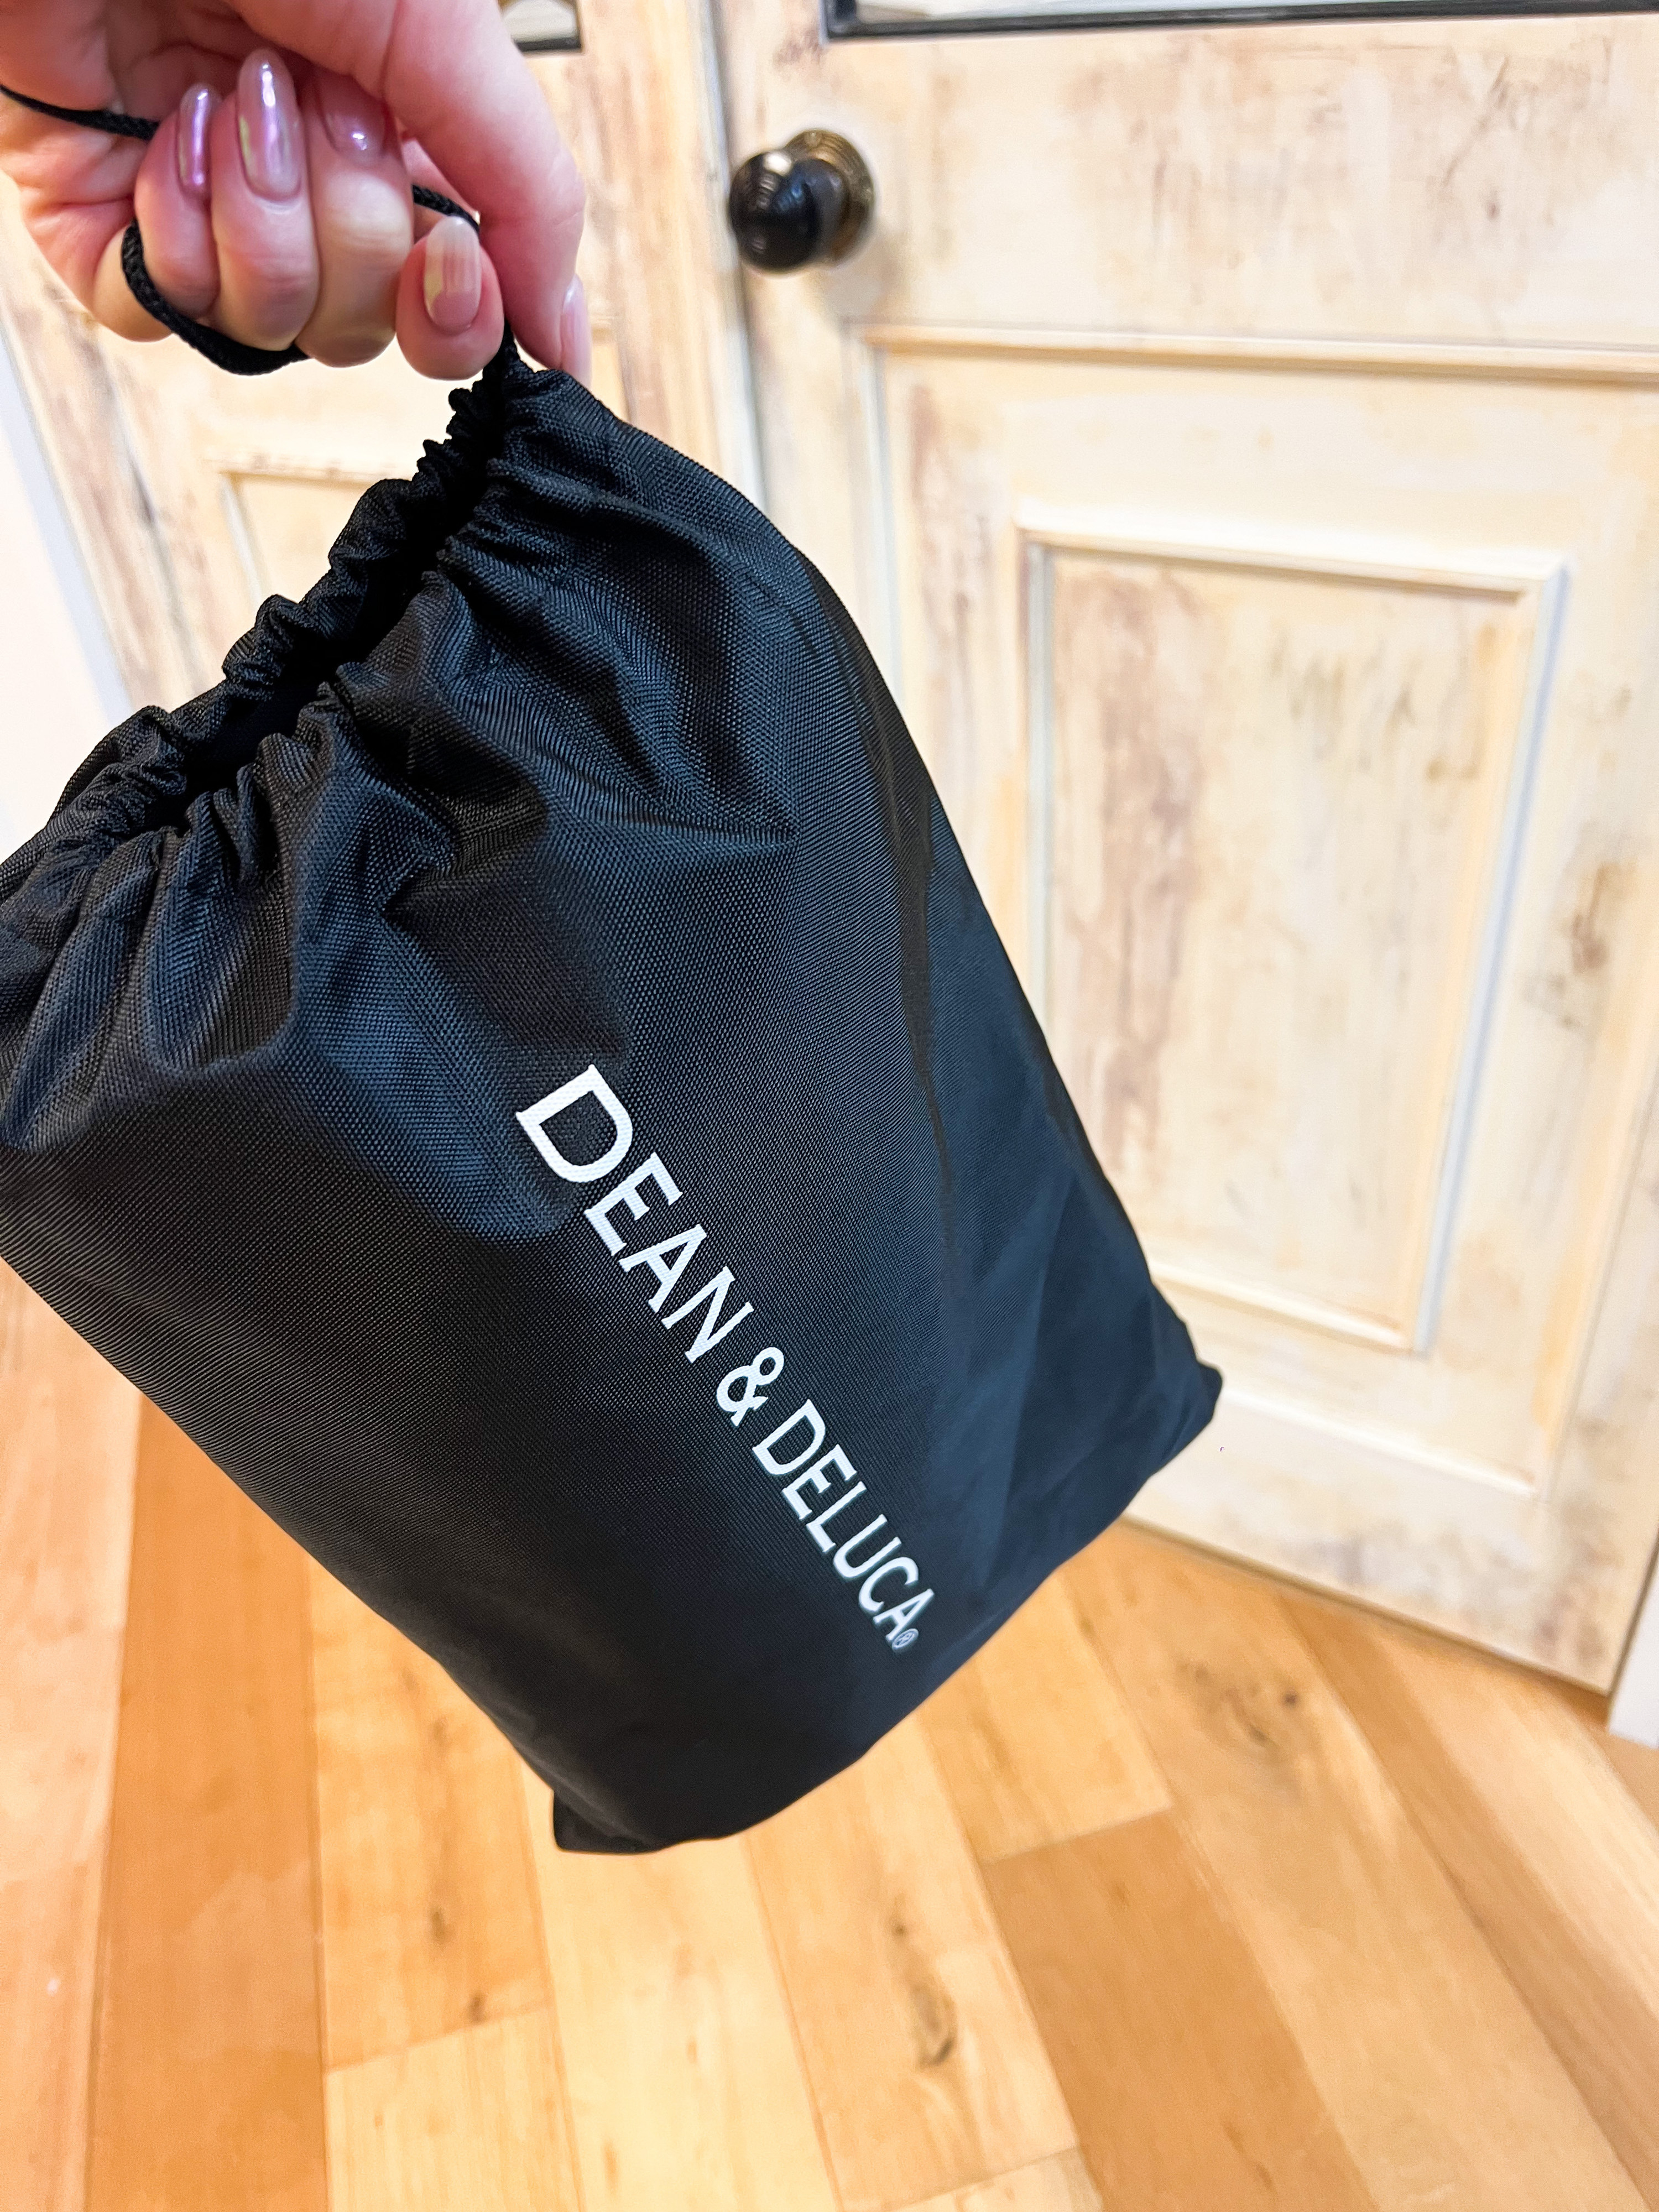 なんで今まで知らなかったんだ…！DEANamp;DELUCAの「ショッピングカート」が便利すぎて涙が出そう。